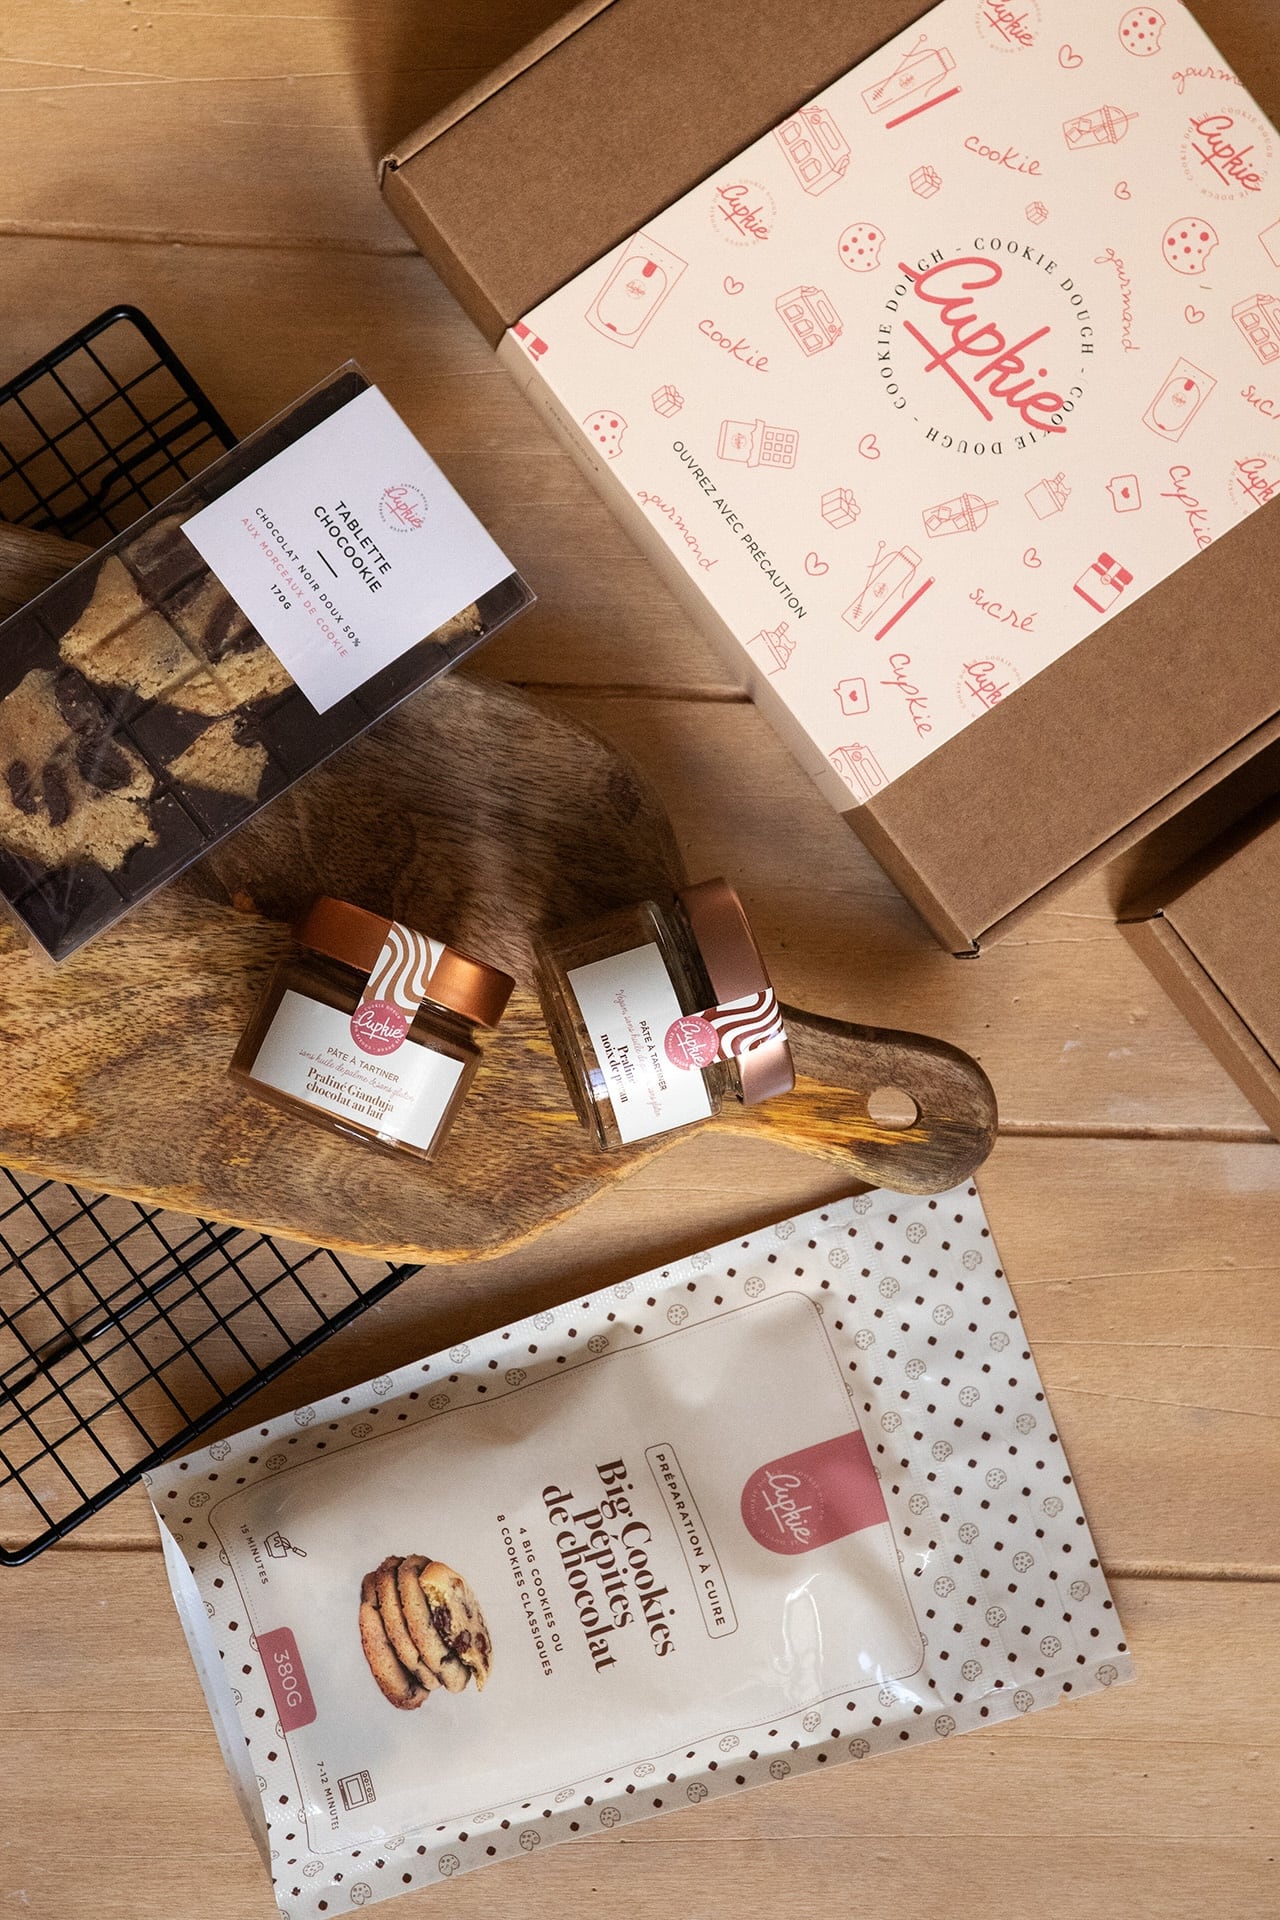 Box cadeau dégustation à offrir - Cupkie Paris